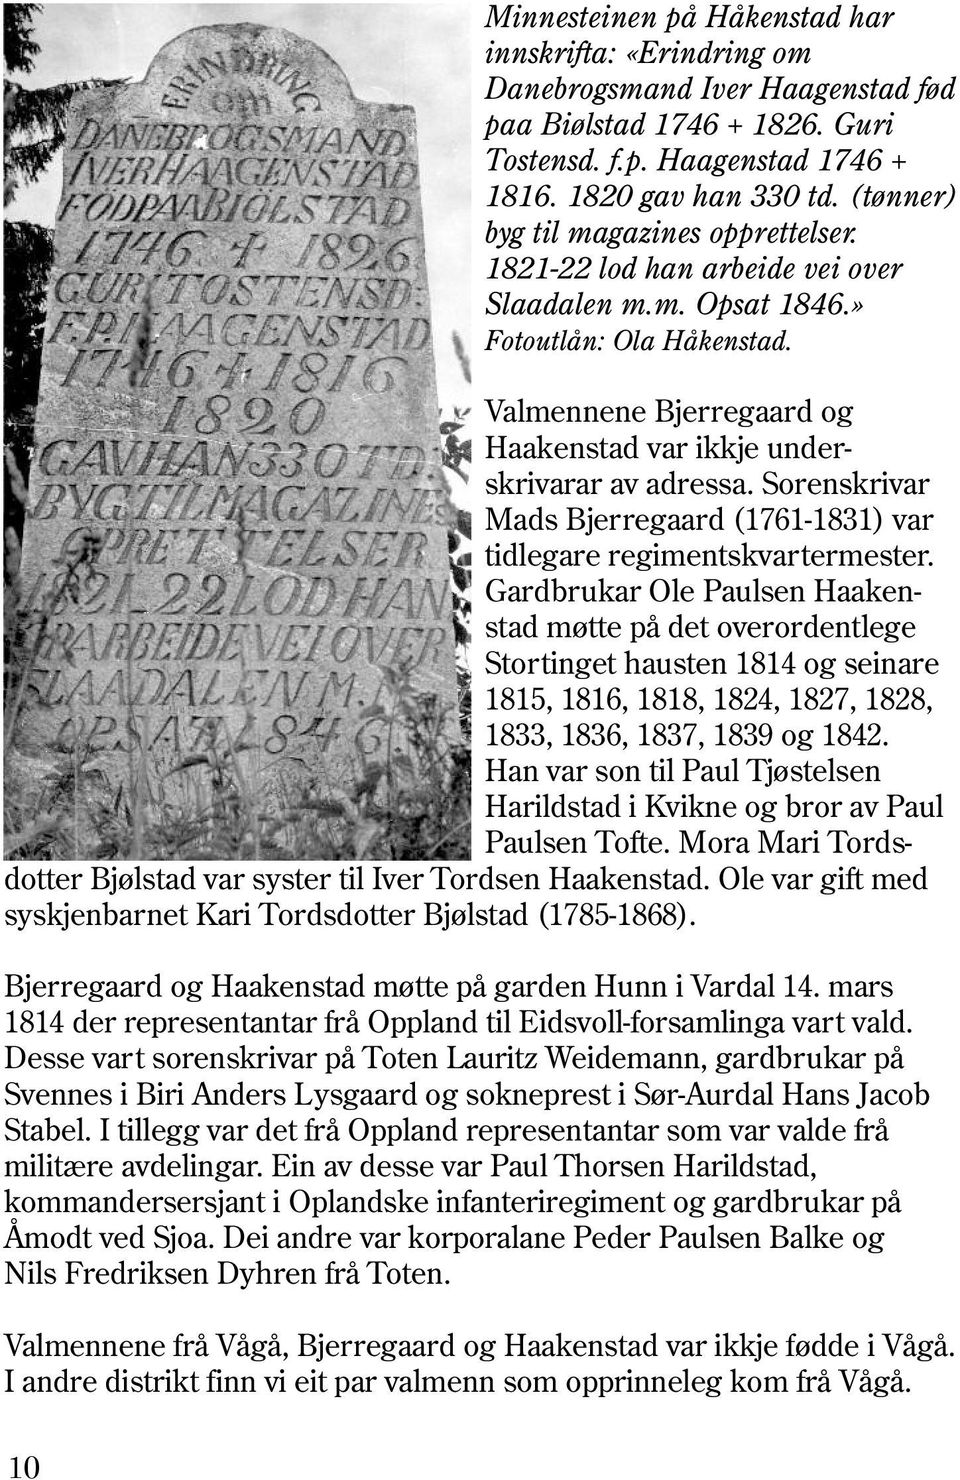 Valmennene Bjerregaard og Haakenstad var ikkje underskrivarar av adressa. Sorenskrivar Mads Bjerregaard (1761-1831) var tidlegare regimentskvartermester.